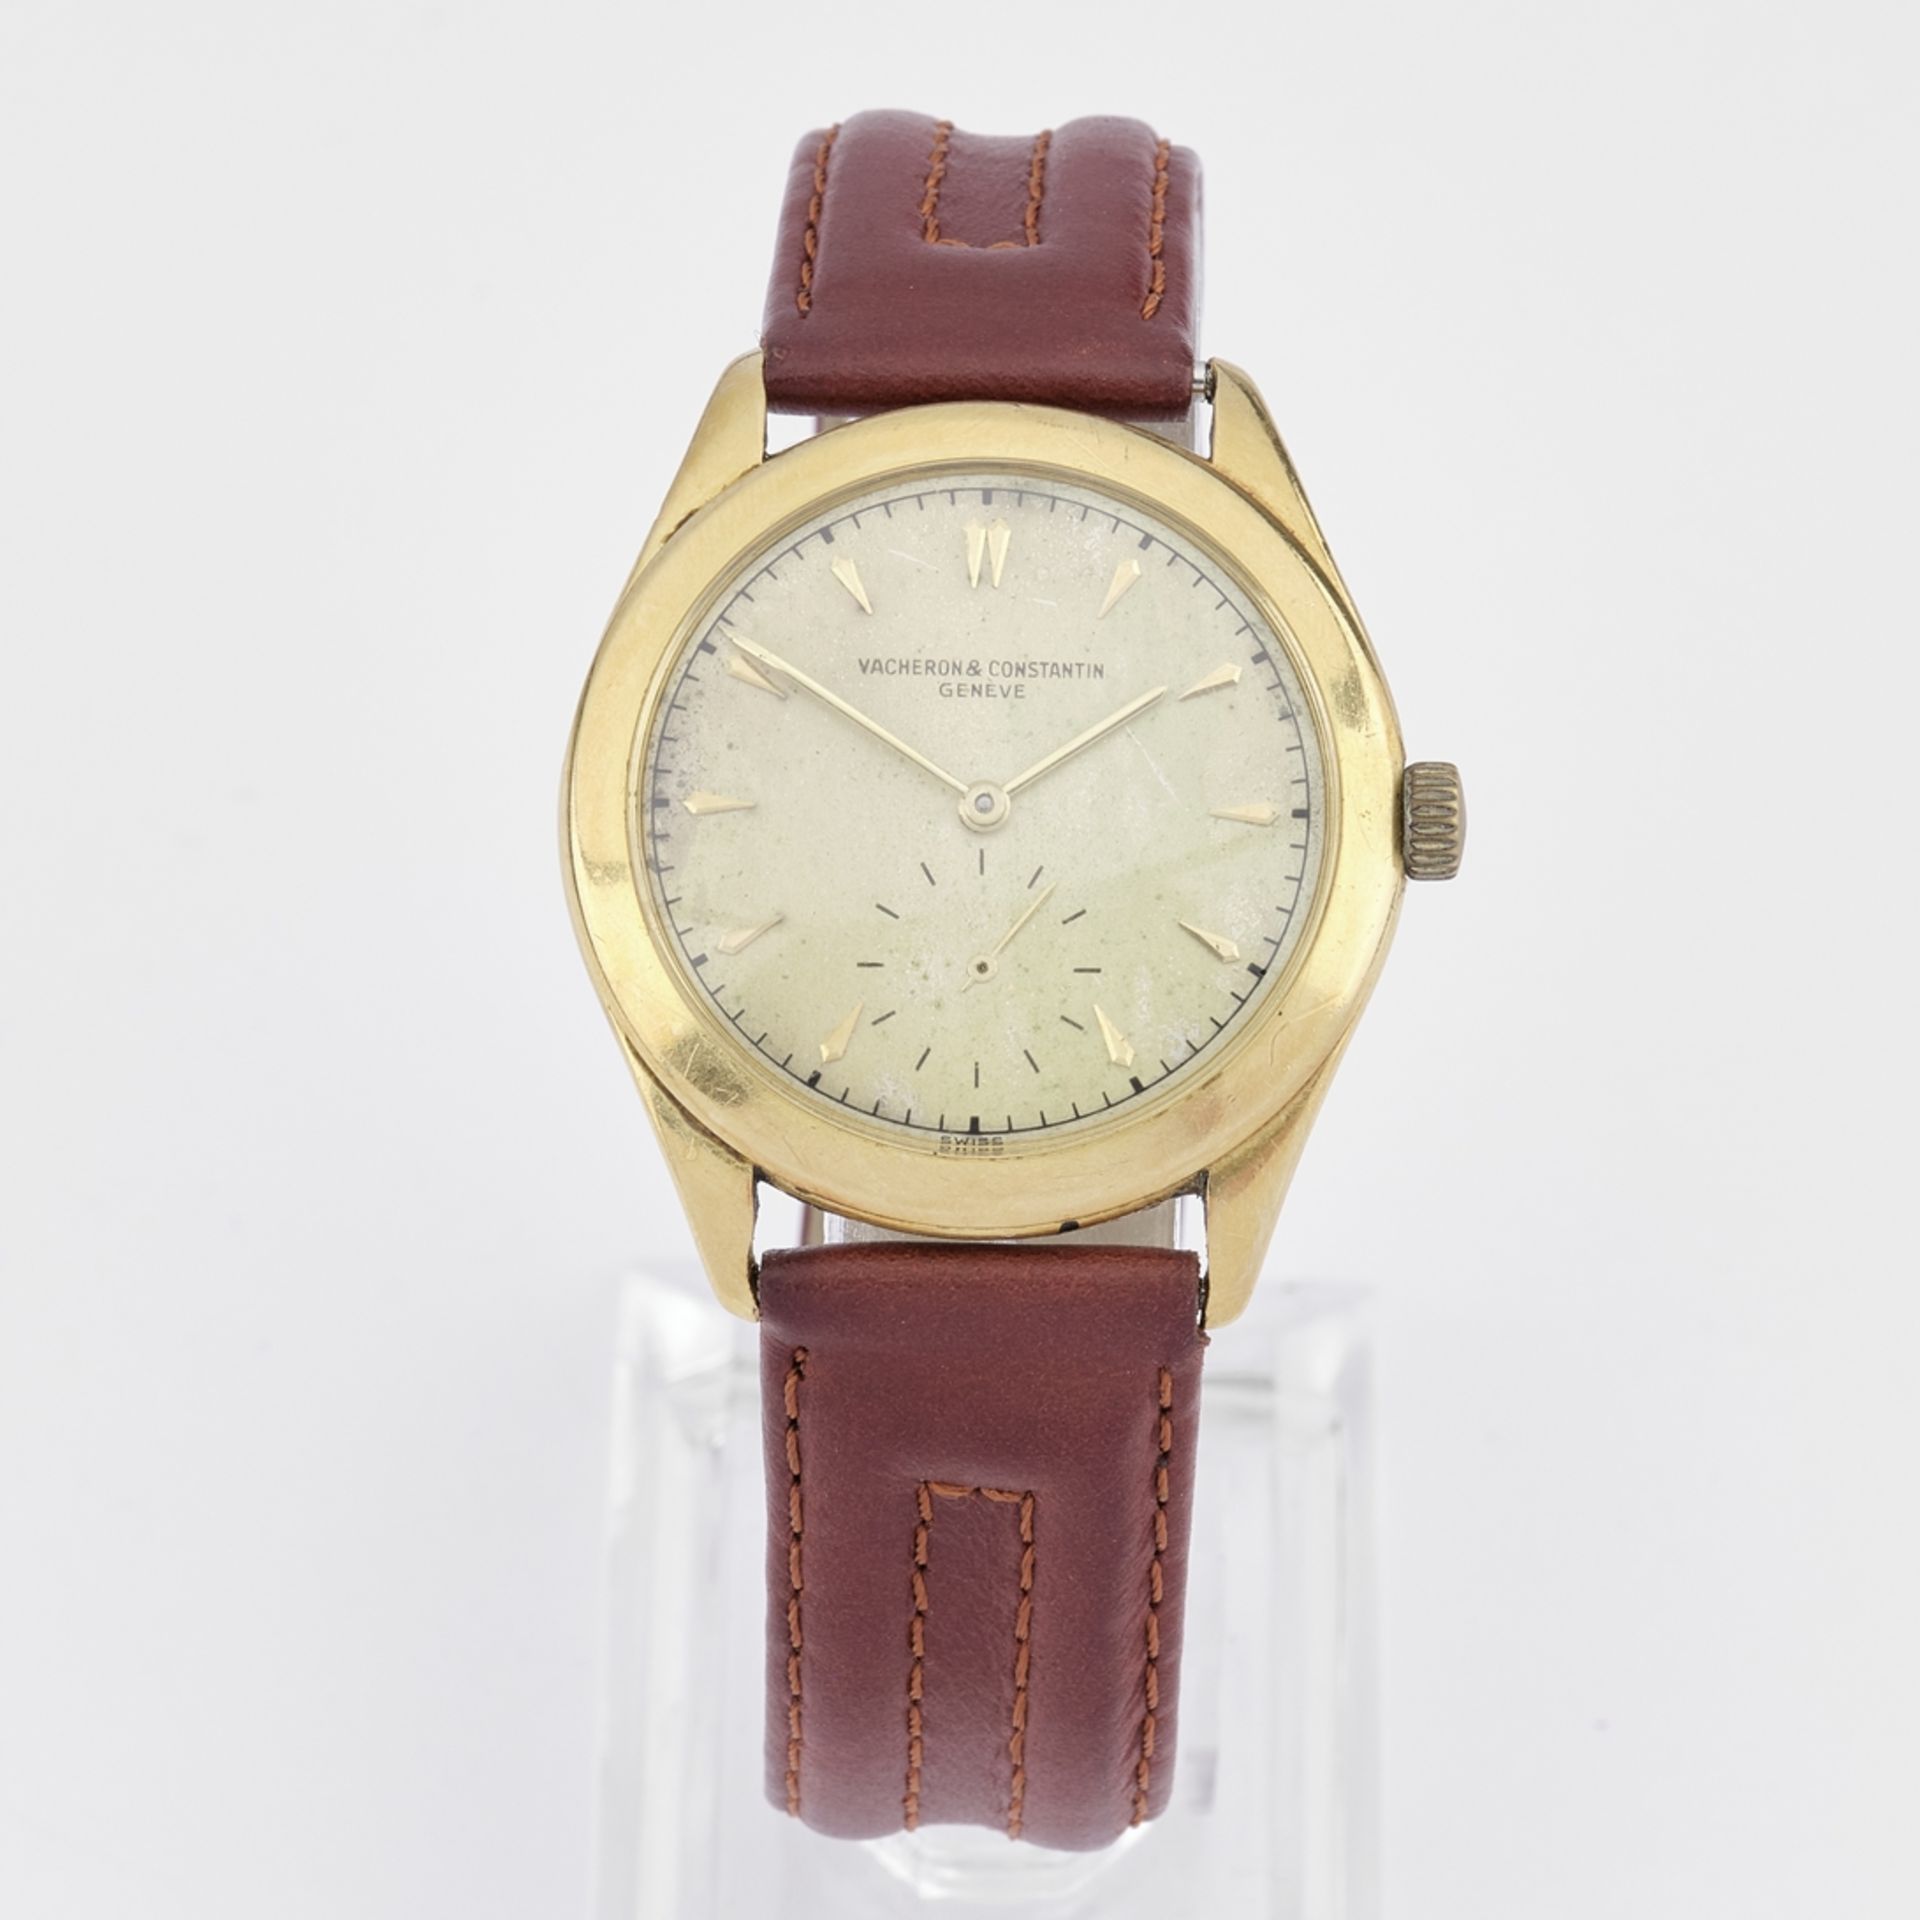 Vacheron & Constantin, Vintage-Armbanduhr, Schweiz, 1950er Jahre, Gehäuse GG 750, Handaufzug, klein